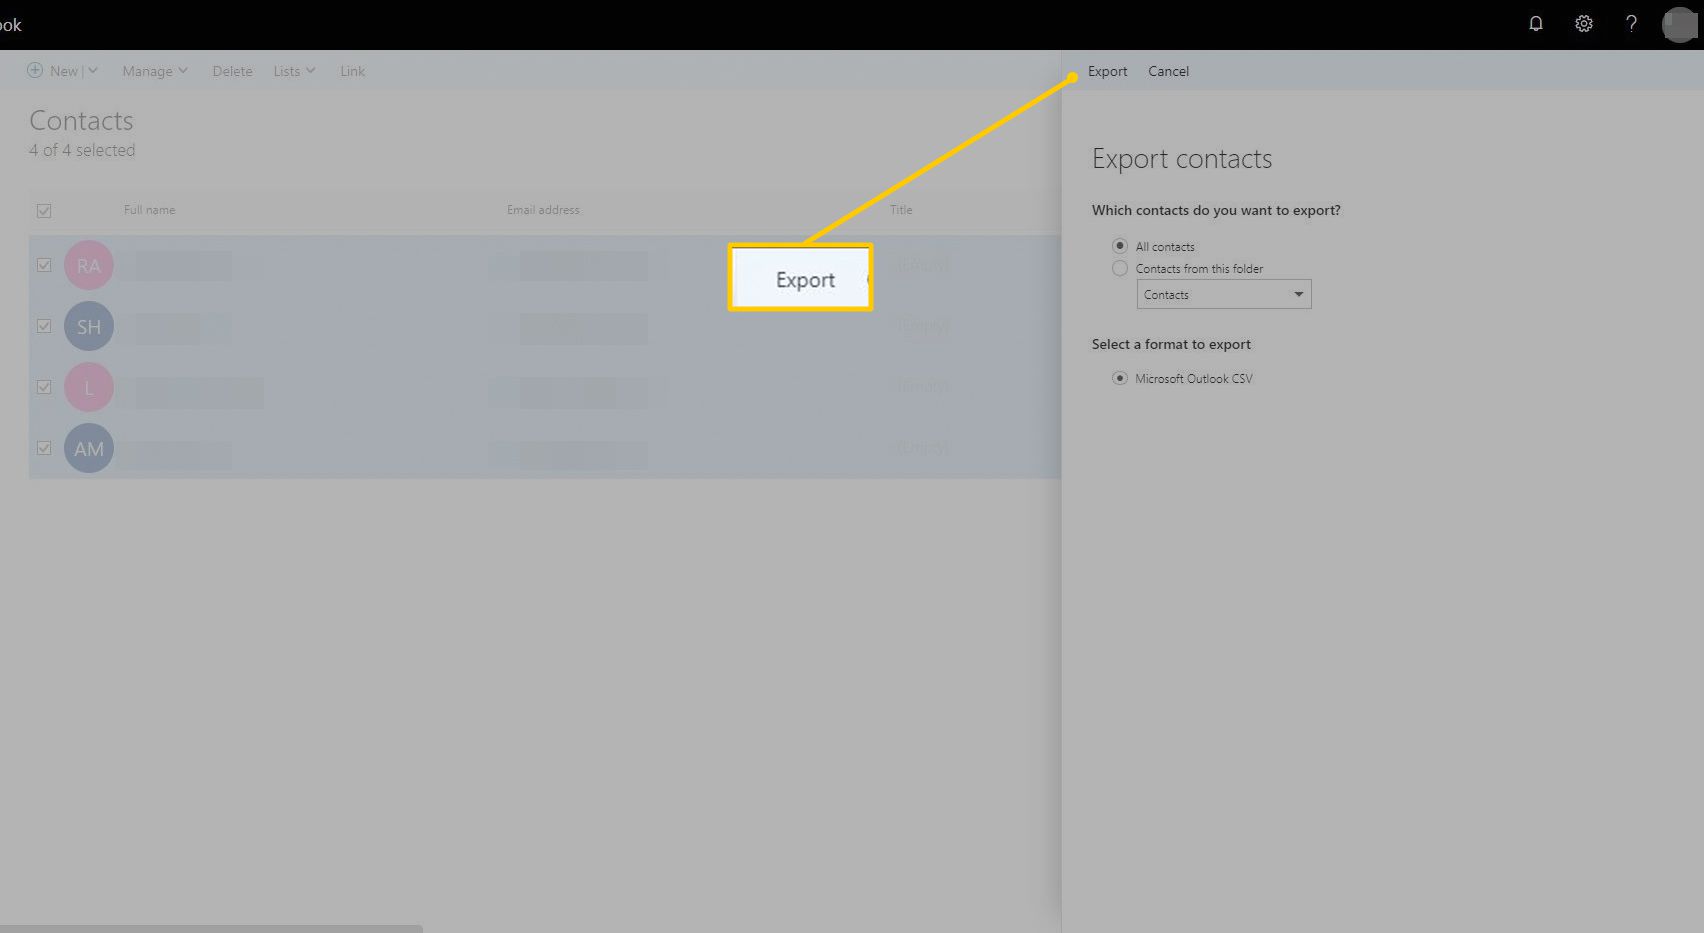 Exporteren knop in Outlook op het web